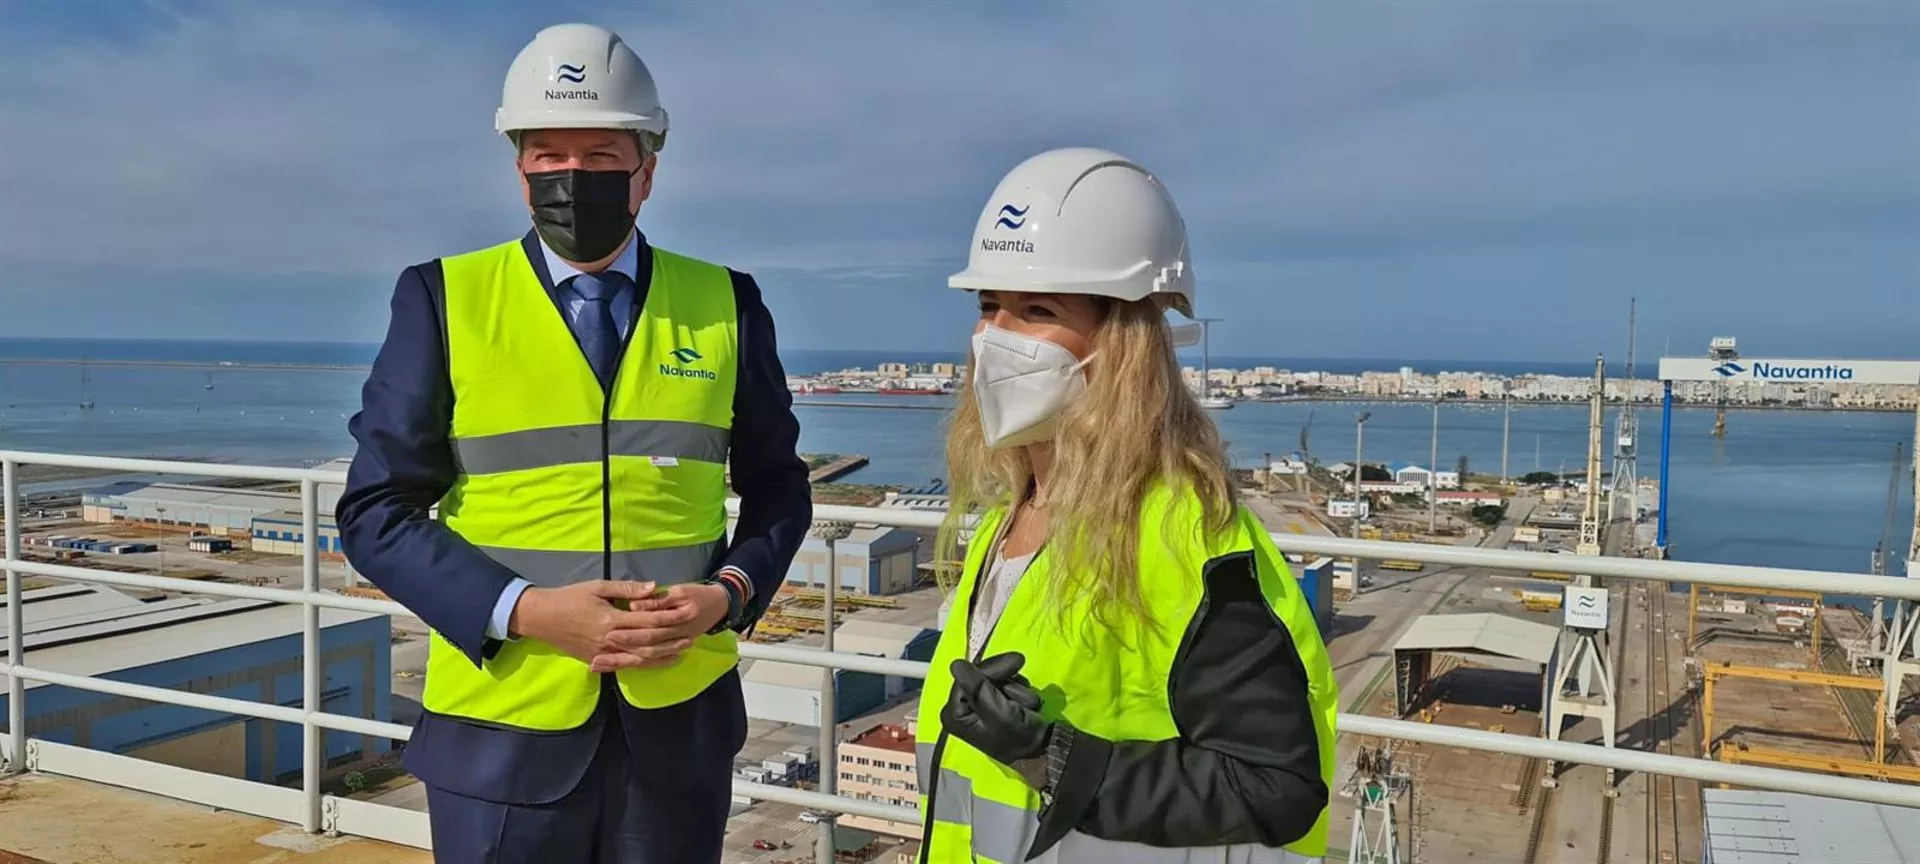 El dique de Cádiz continúa con actividad con las reparaciones de grandes cruceros